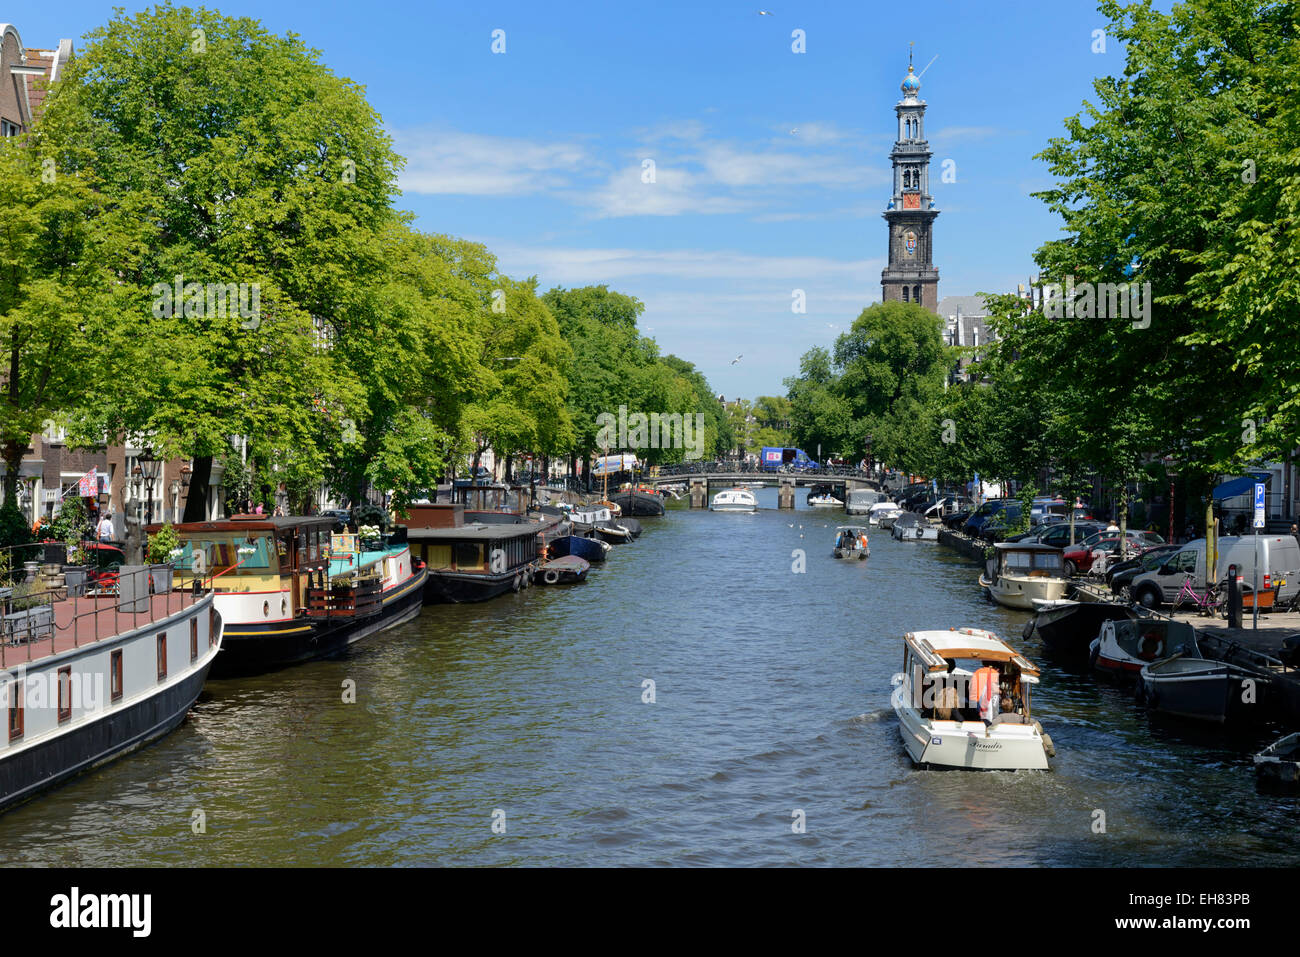 Zeigen Sie Prinsengracht Kanal entlang, mit Blick auf die Westerkerk Kirche an, Amsterdam, Noord-Holland, Niederlande, Europa Stockfoto